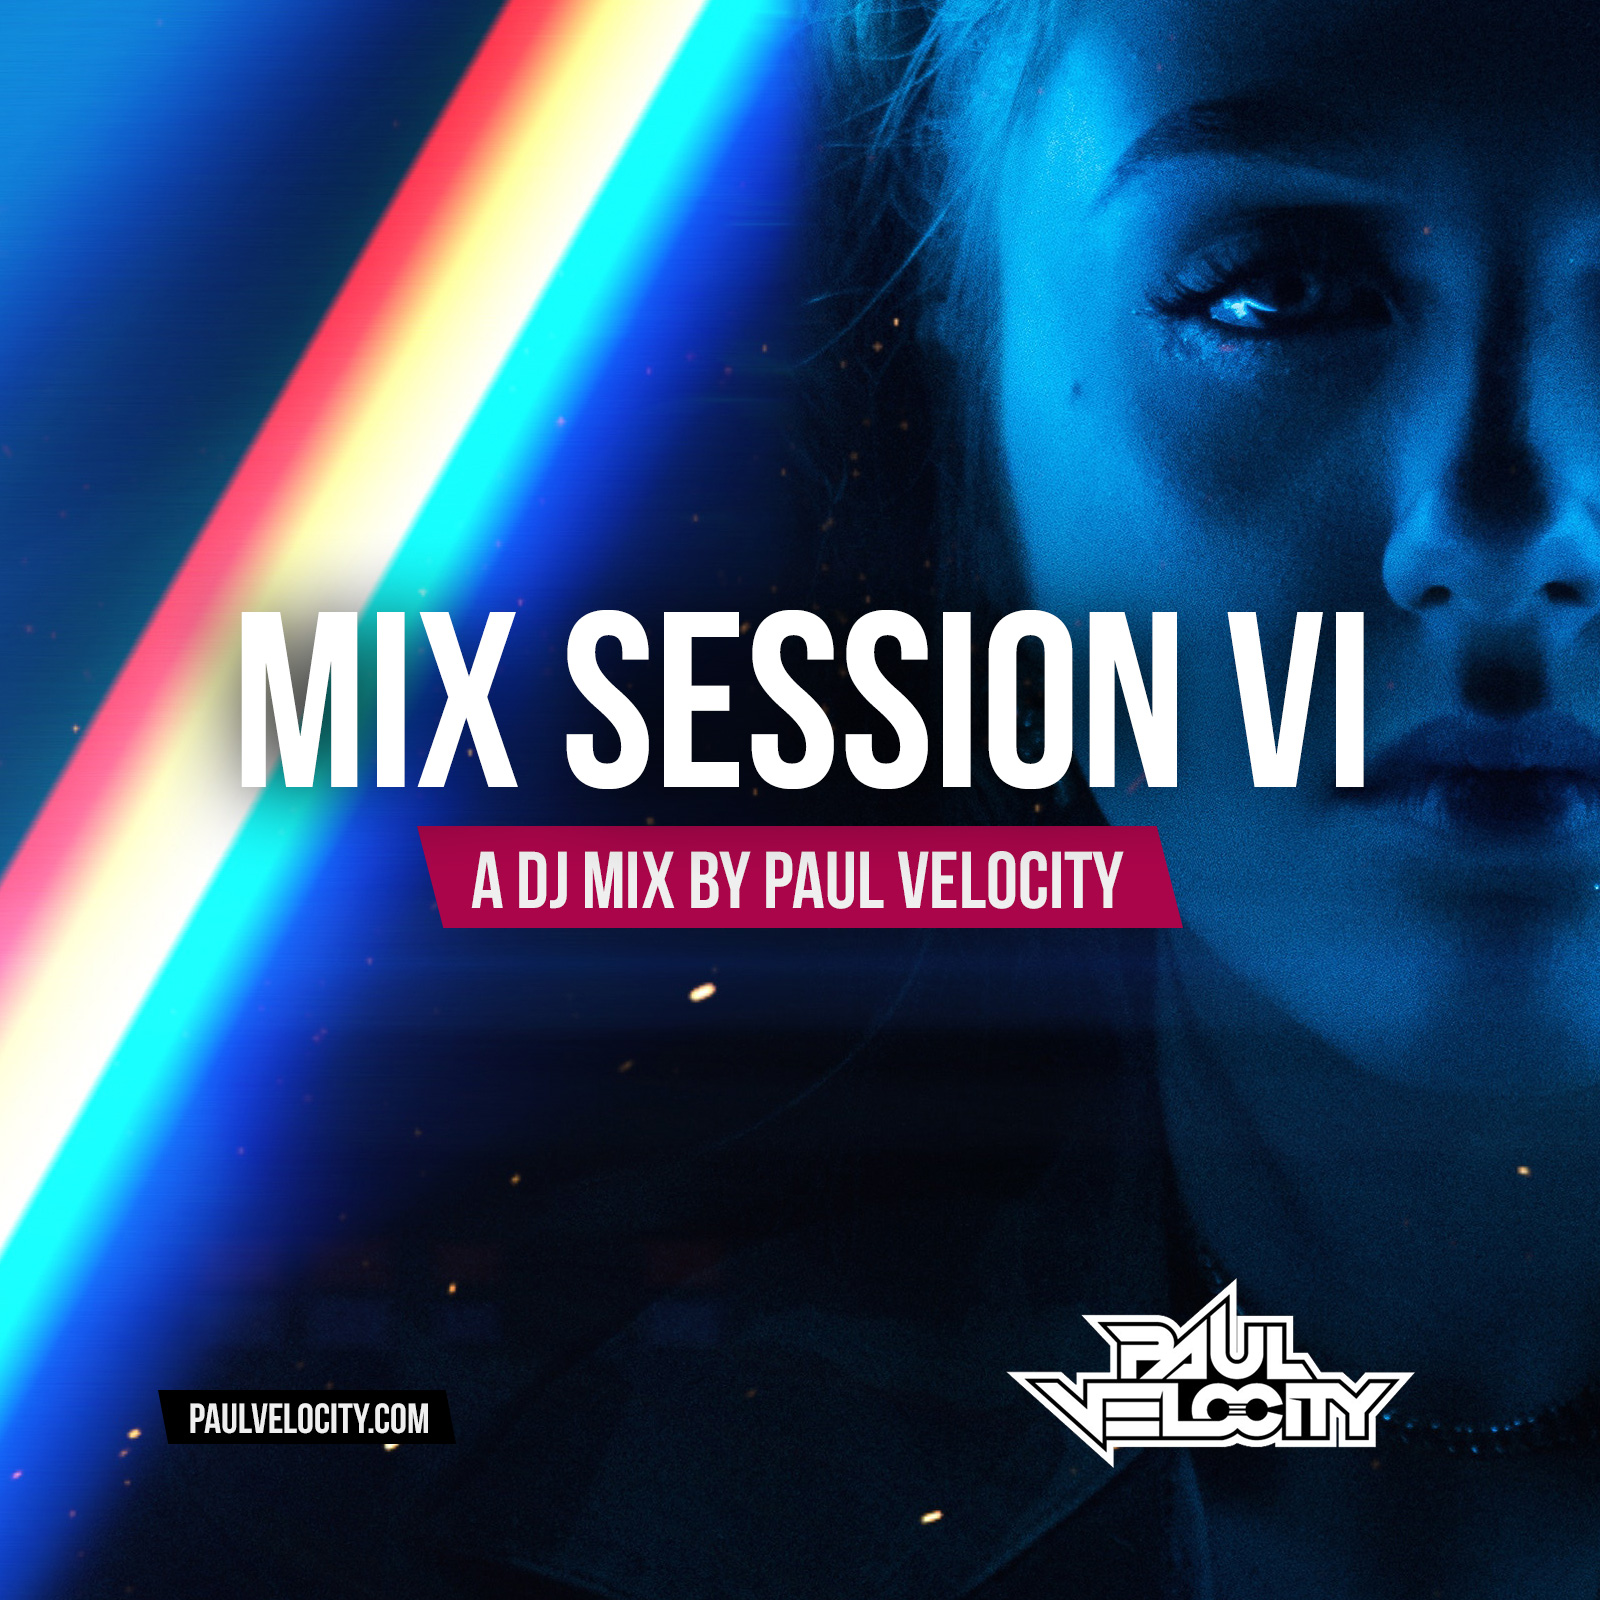 Mix Session VI